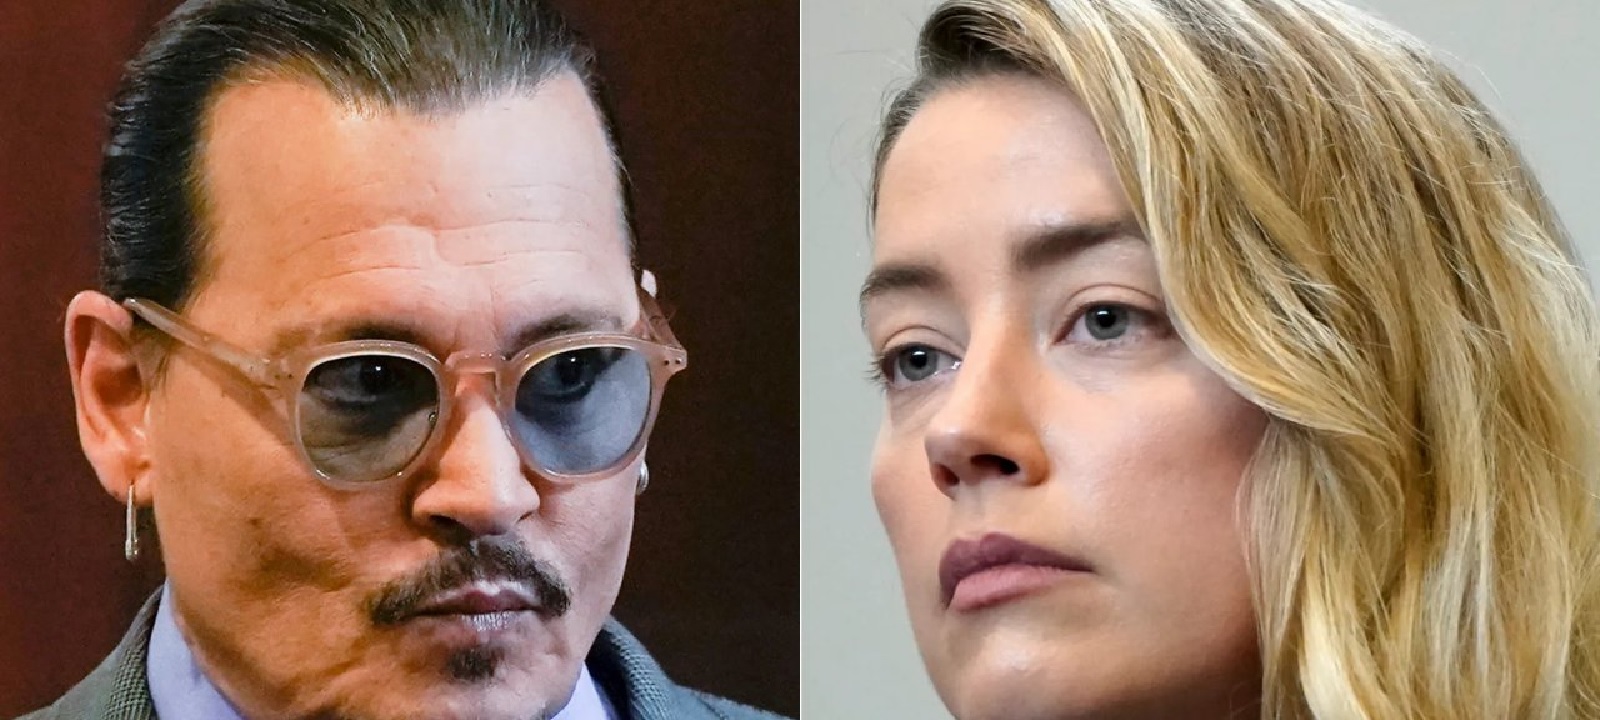 Johnny Depp, Amber Heard: in arrivo il documentario sul processo